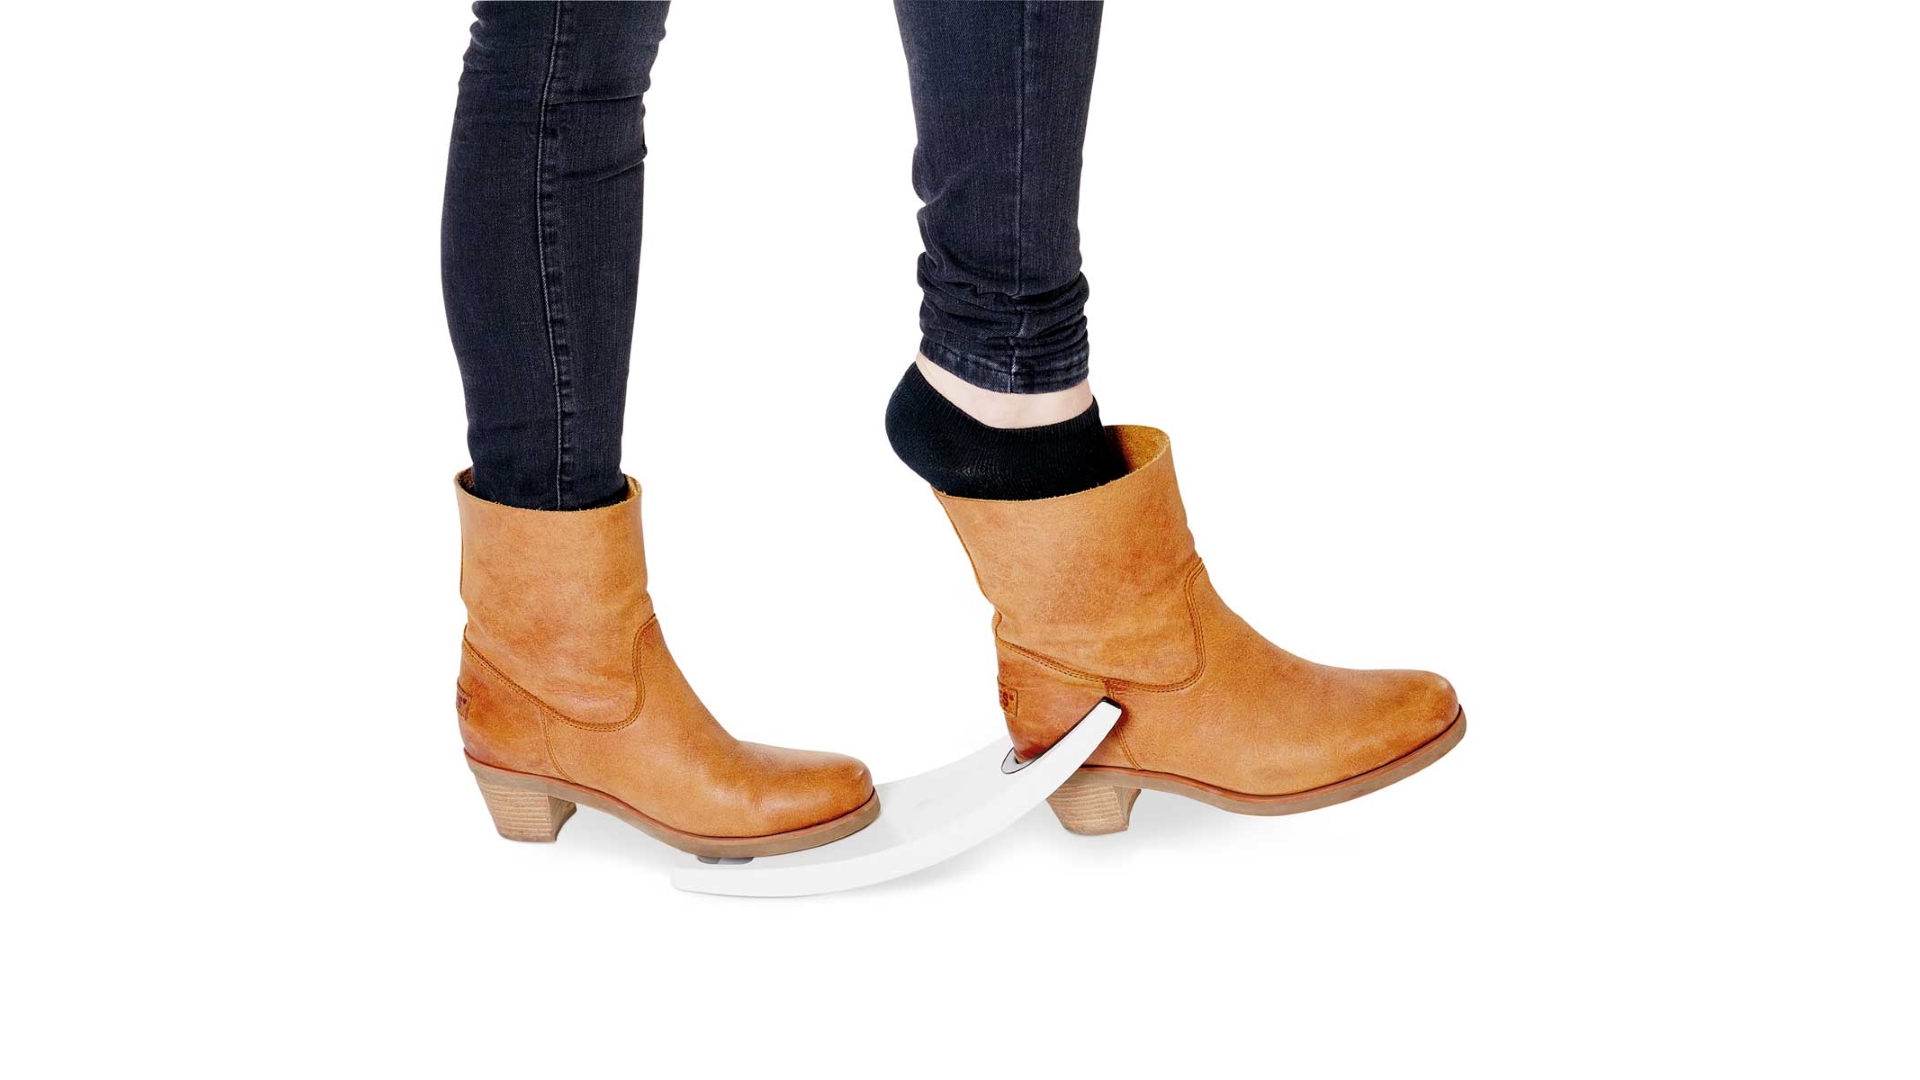 Abbildung zweier Füße mit Damenstiefeln, ein Fuß steht auf dem flachen Teil des Schuhausziehers, der andere Stiefel ist im vorderen Ausschnitt eingeklemmt und der Fuß kann herausgezogen werden.